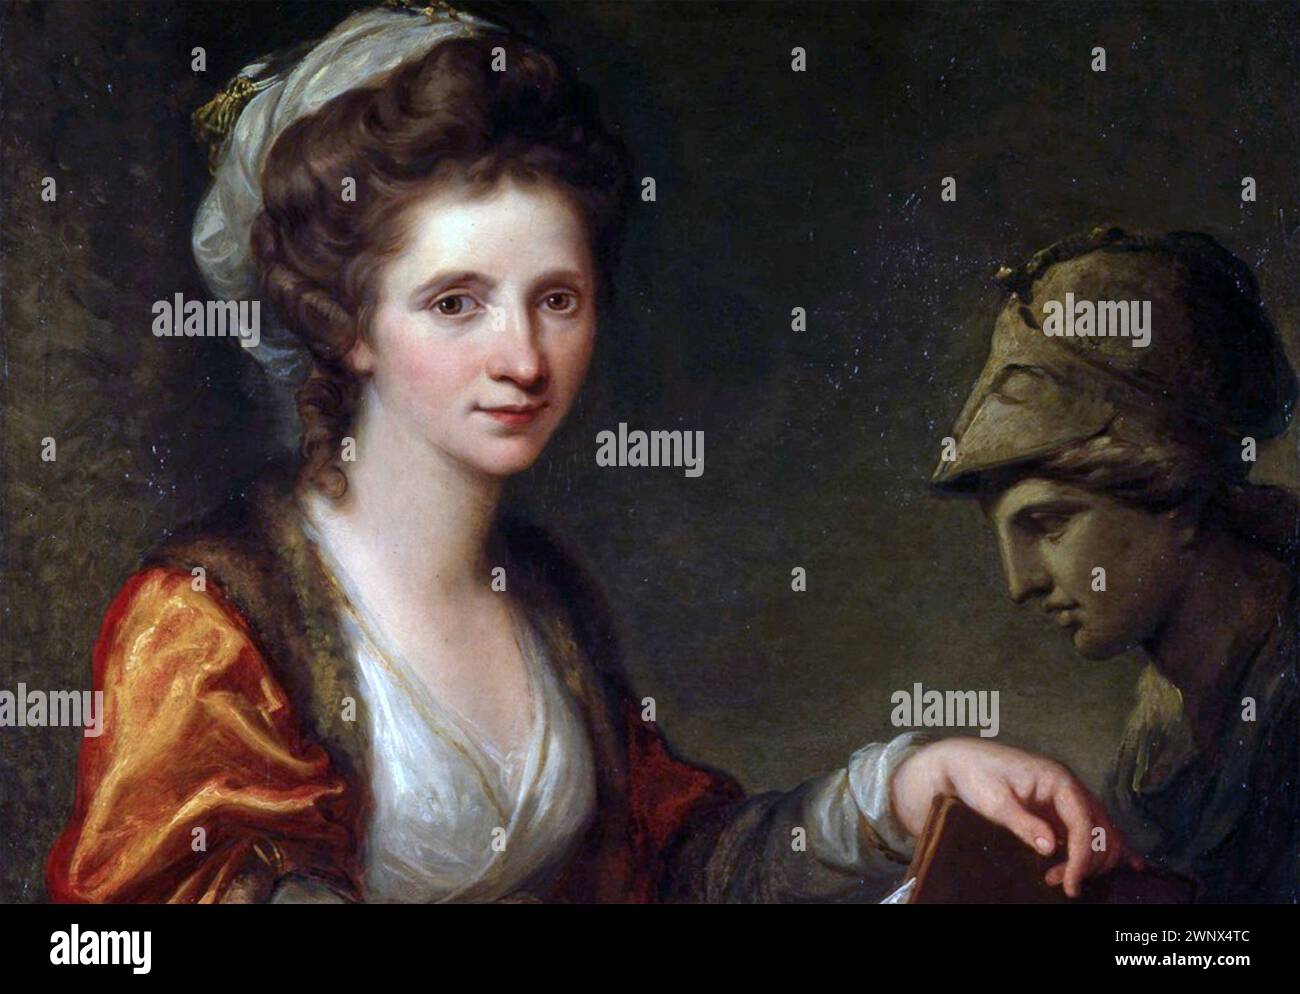 ANGELICA KAUFFMAN (1741-1807) pittrice neoclassica svizzera. Sezione del suo autoritratto con Minerva dipinta a Roma nel 1791 Foto Stock